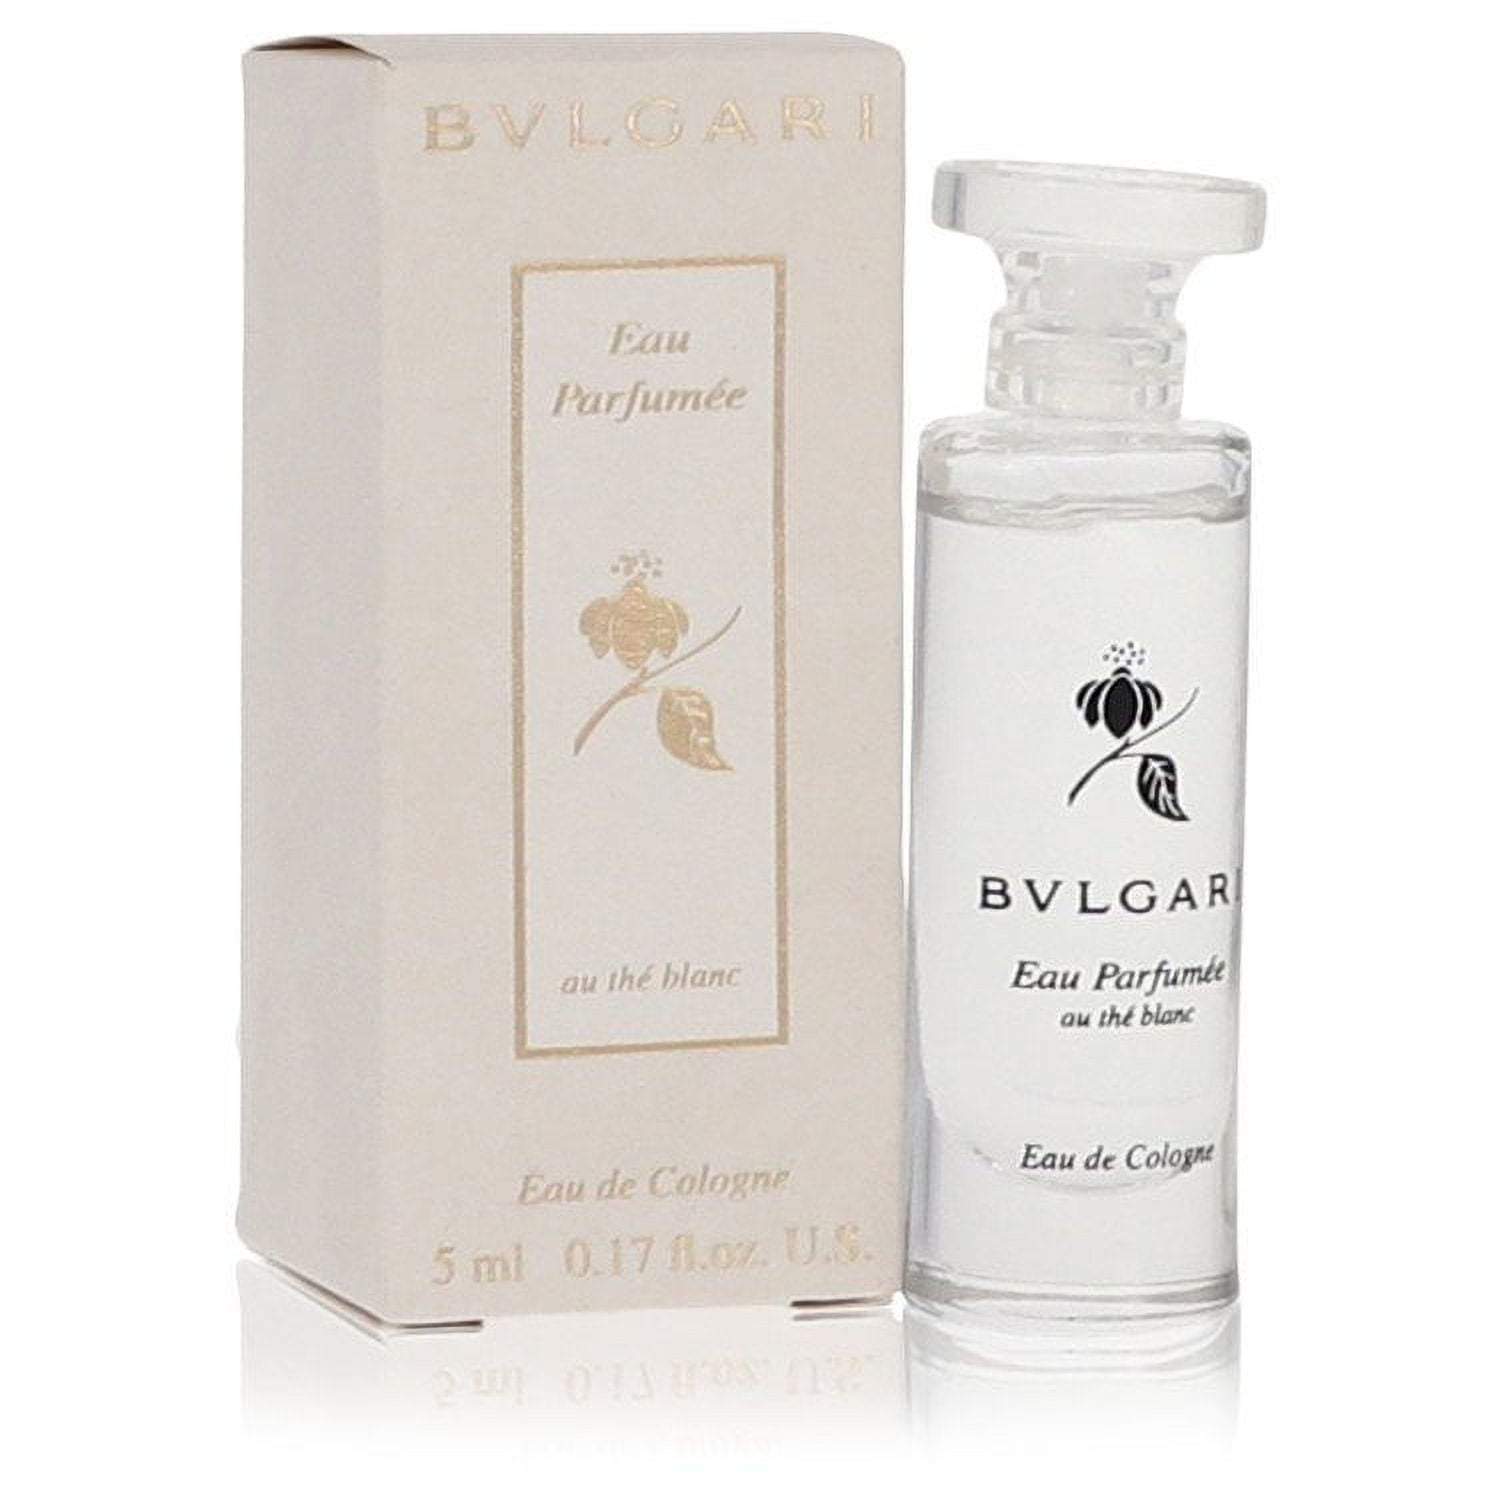 Bvlgari Eau Parfumee Au The Blanc Eau de Cologne for Women for sale